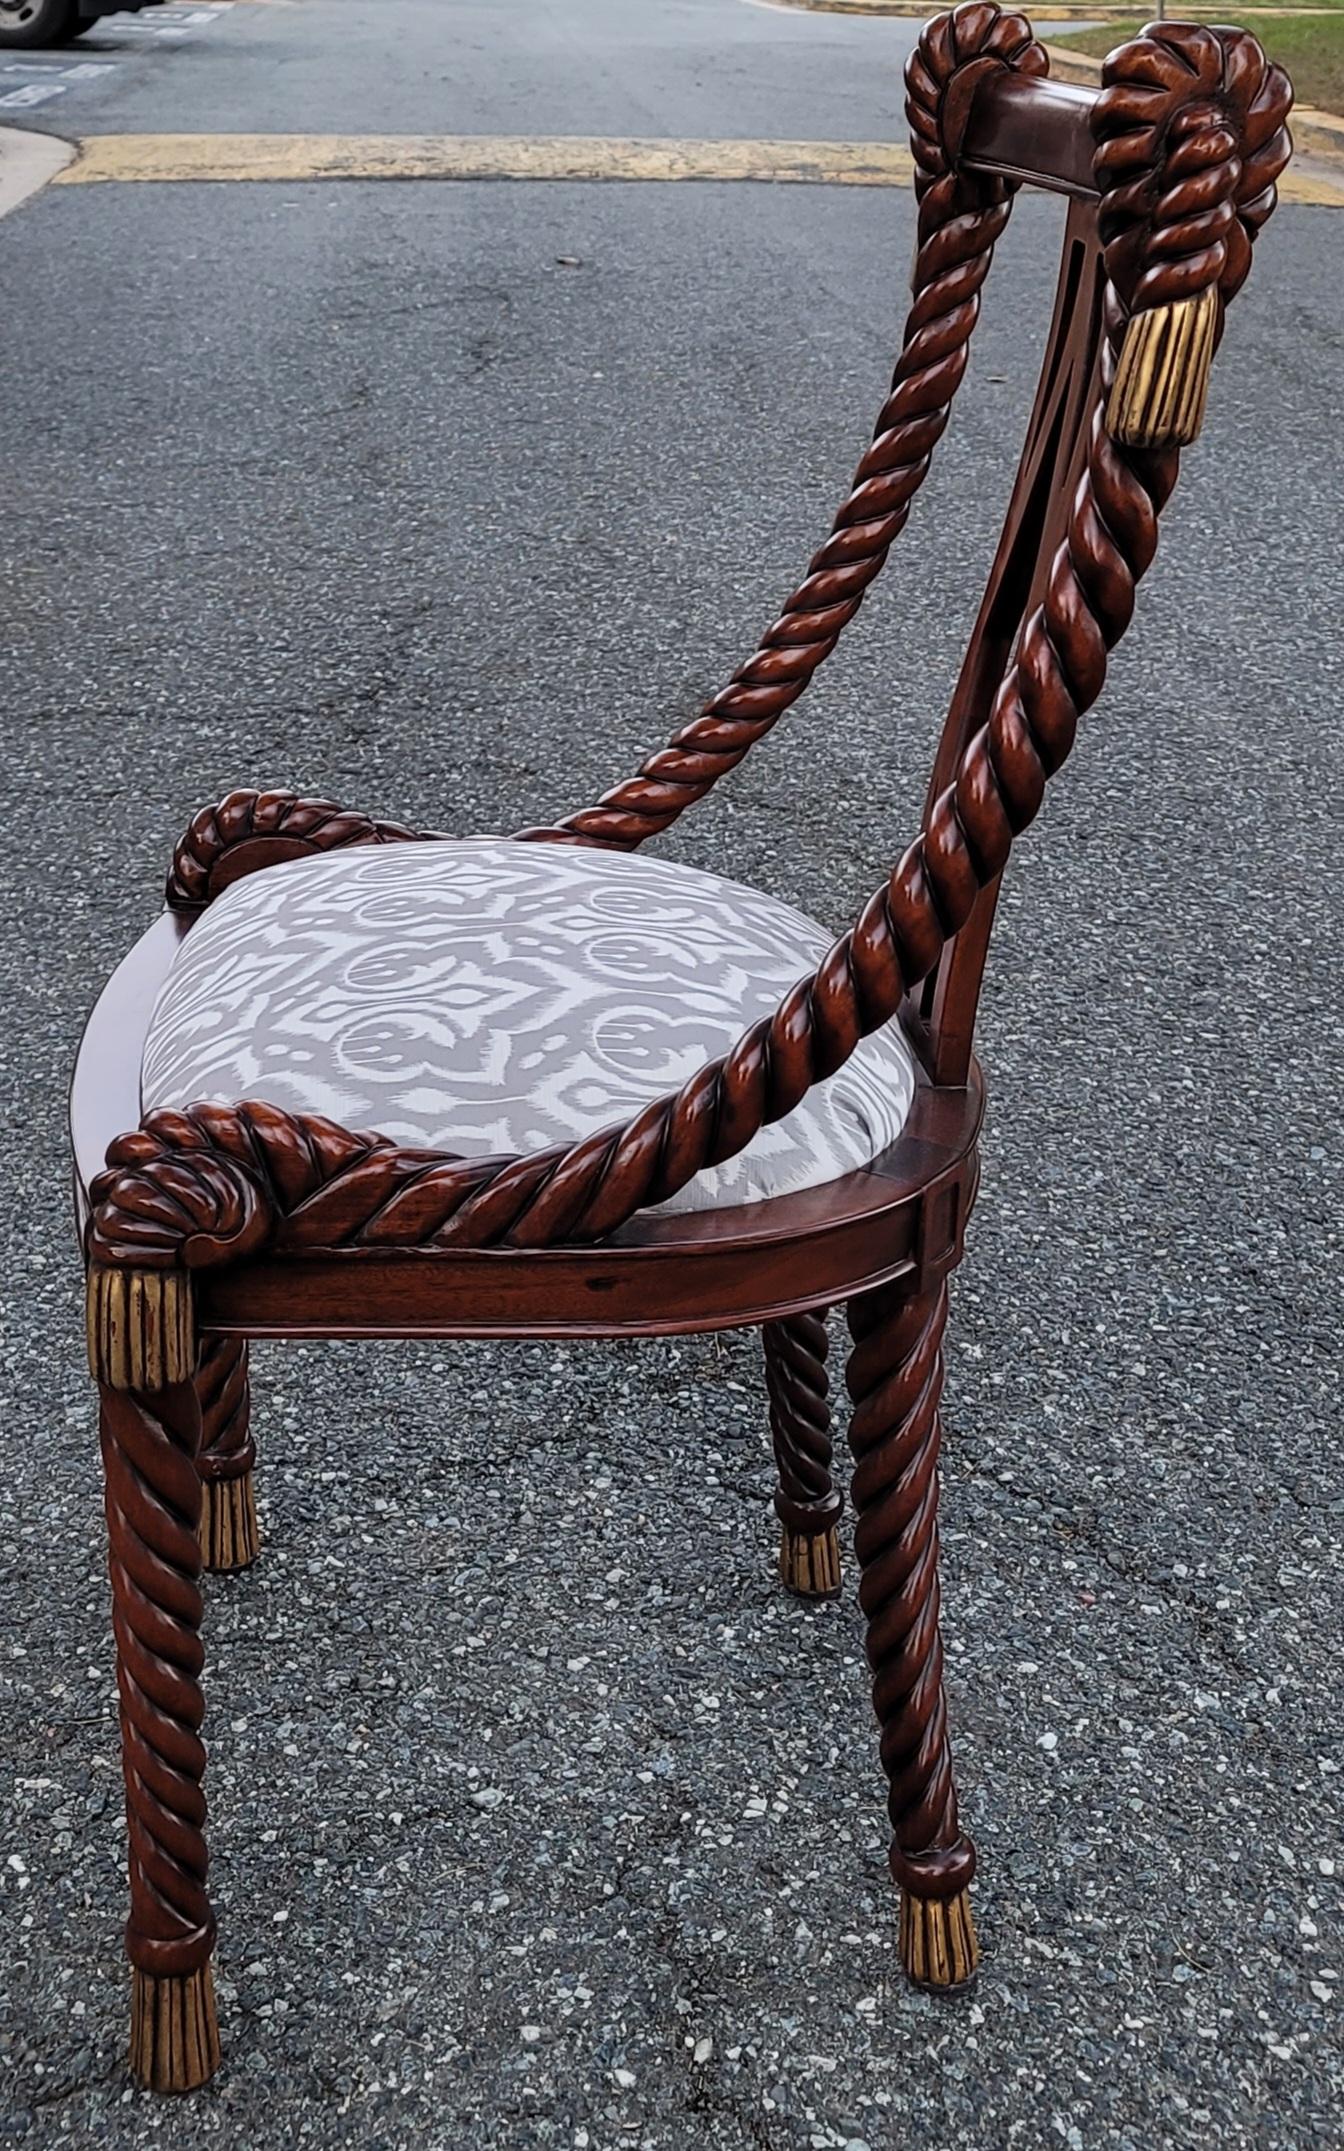 Ein exquisites Paar großer Biedermeier Barley Twist Seil geschnitzt Beistelltische in ausgezeichnetem Vintage-Zustand.
Aus der Sammlung Victoria. Handgefertigt in Australien. Diese werden als große Stühle betrachtet. Sie misst 23